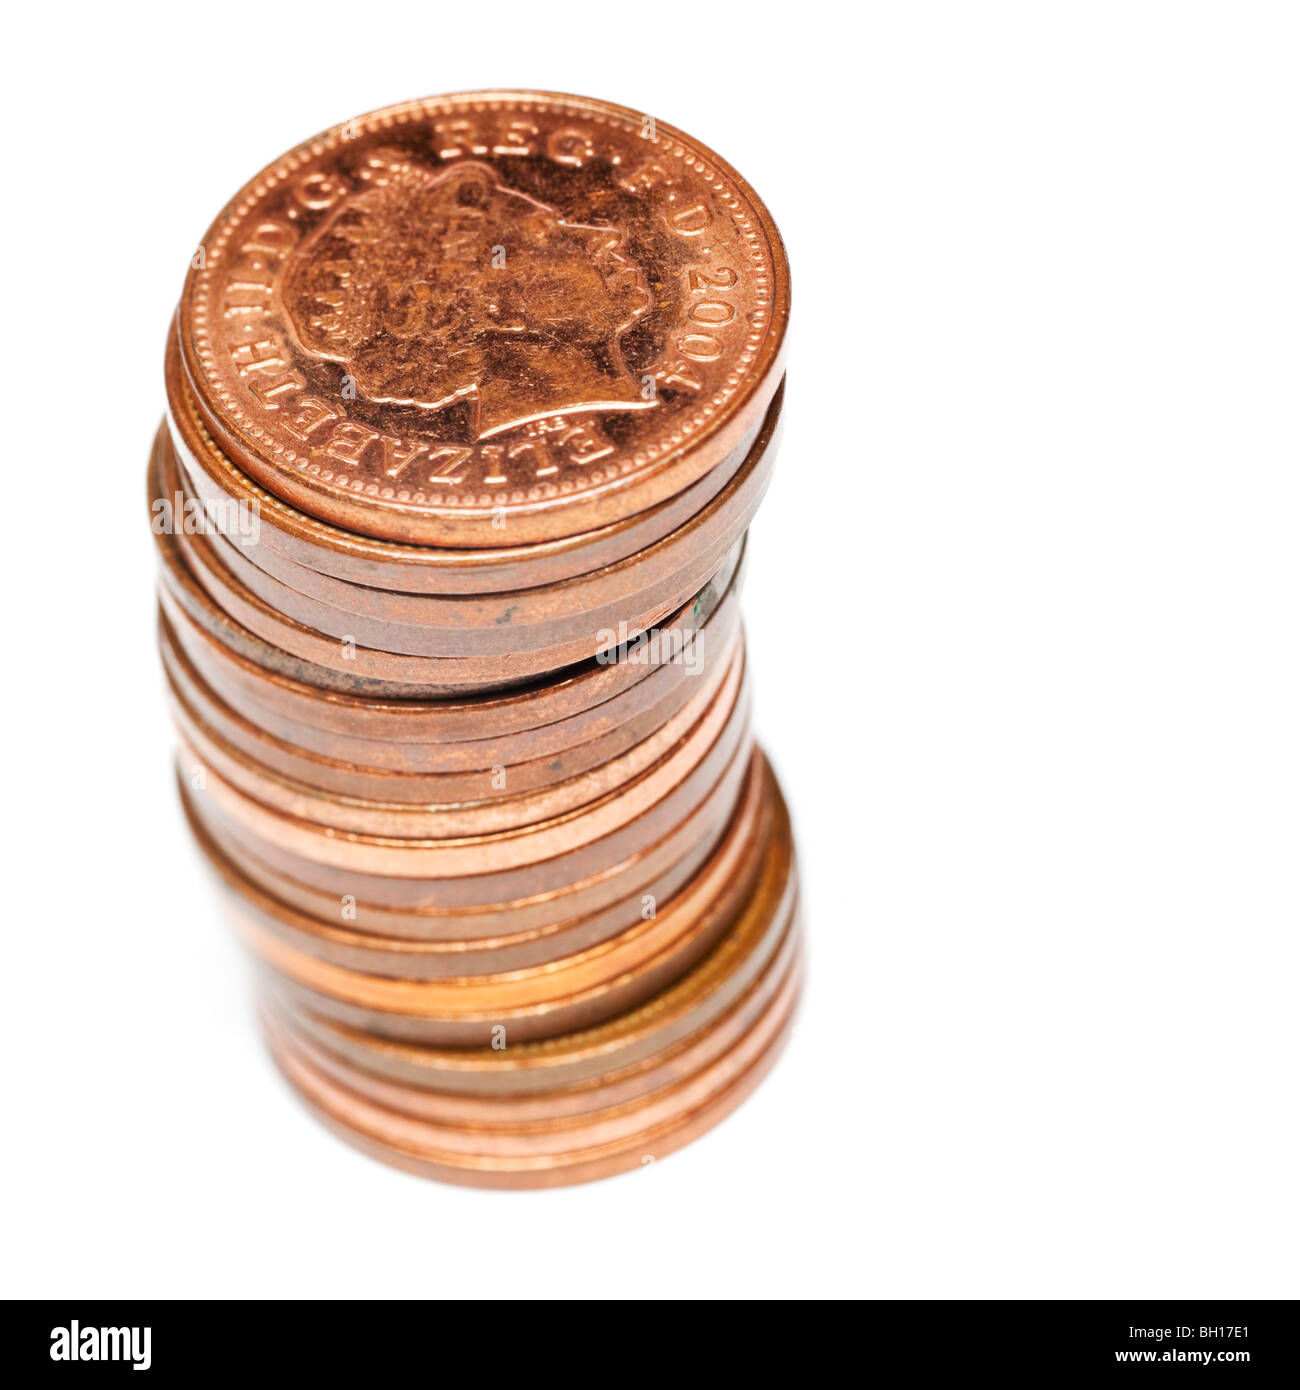 Pile de pièces de monnaie britanniques un pence - macro close up selective focus Banque D'Images